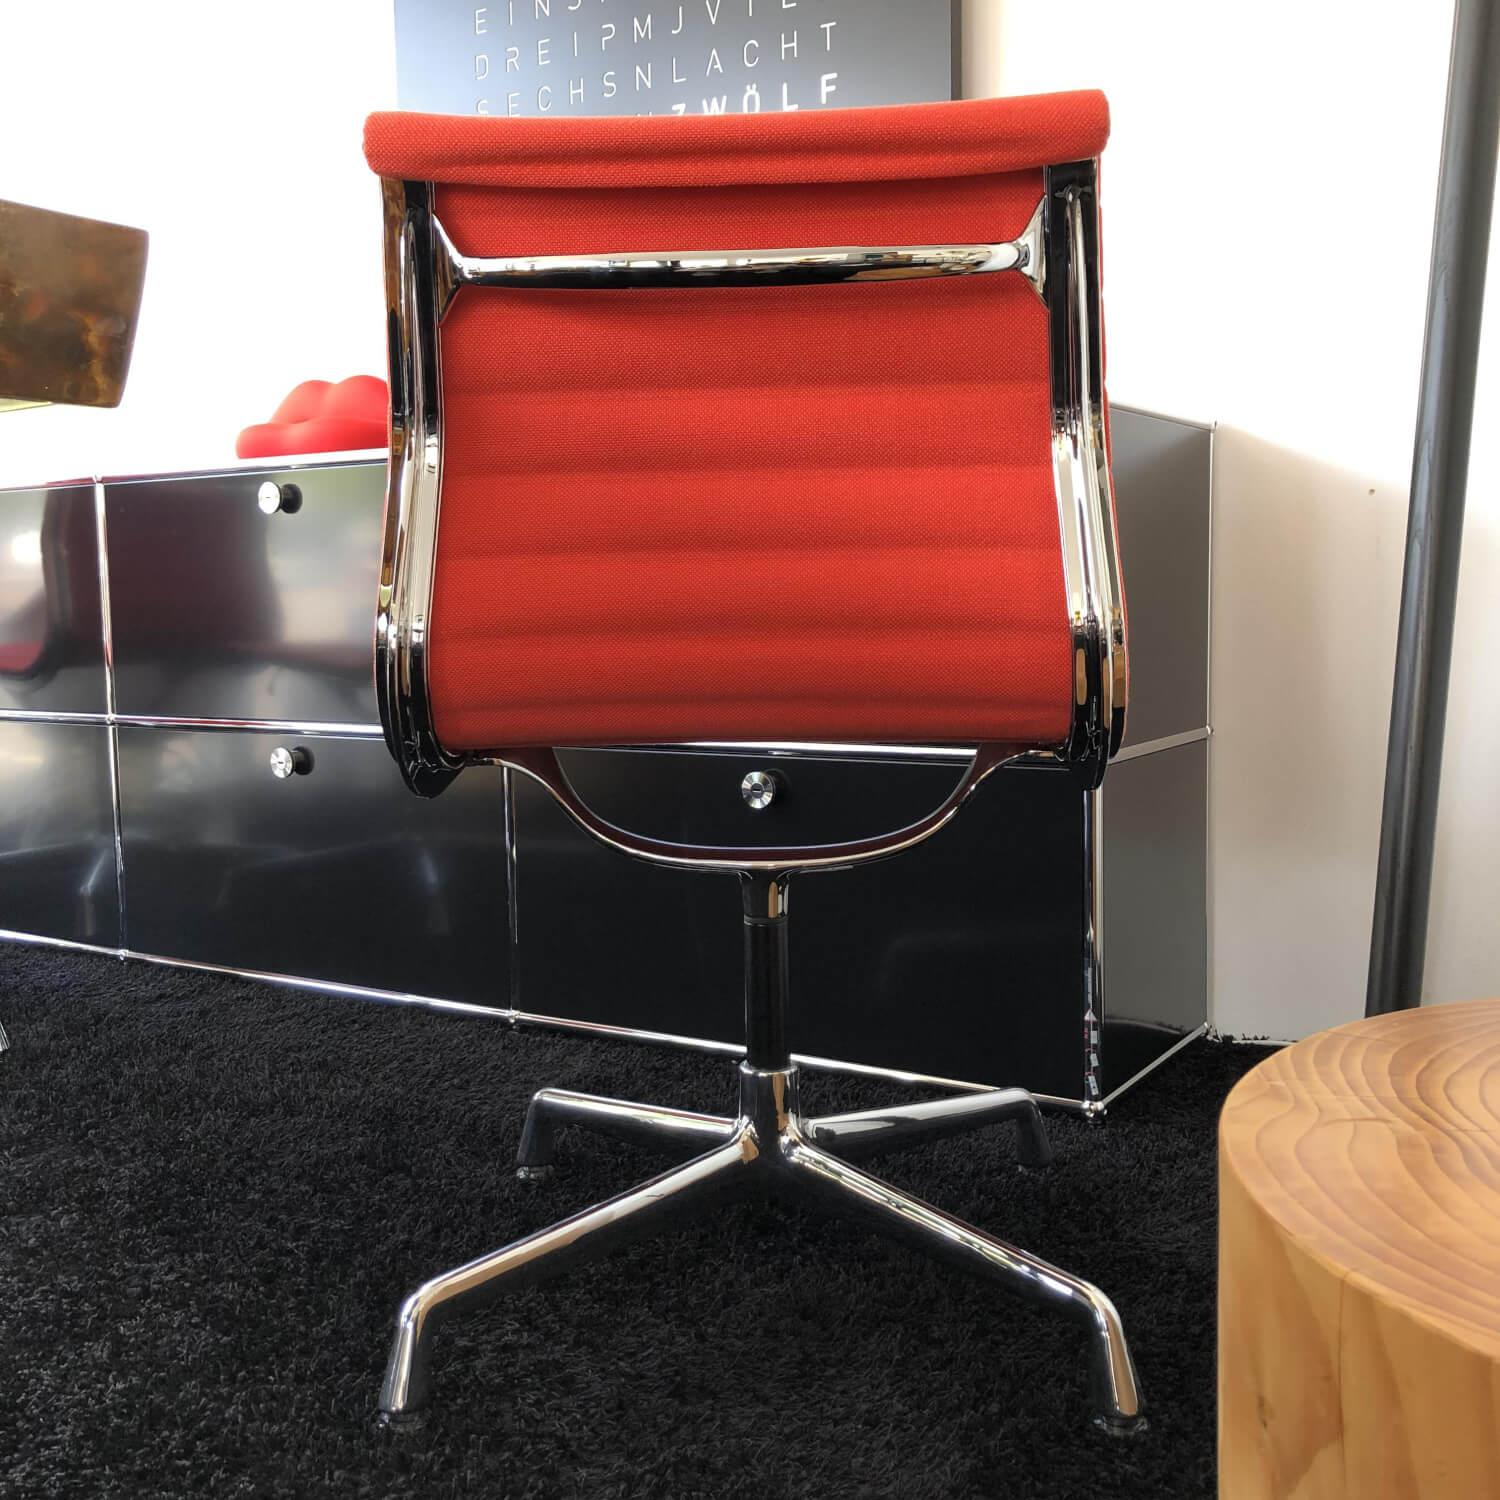 Stuhl Aluminium Chair EA 101 Stoff Hopsak Koralle Poppy Red Rot